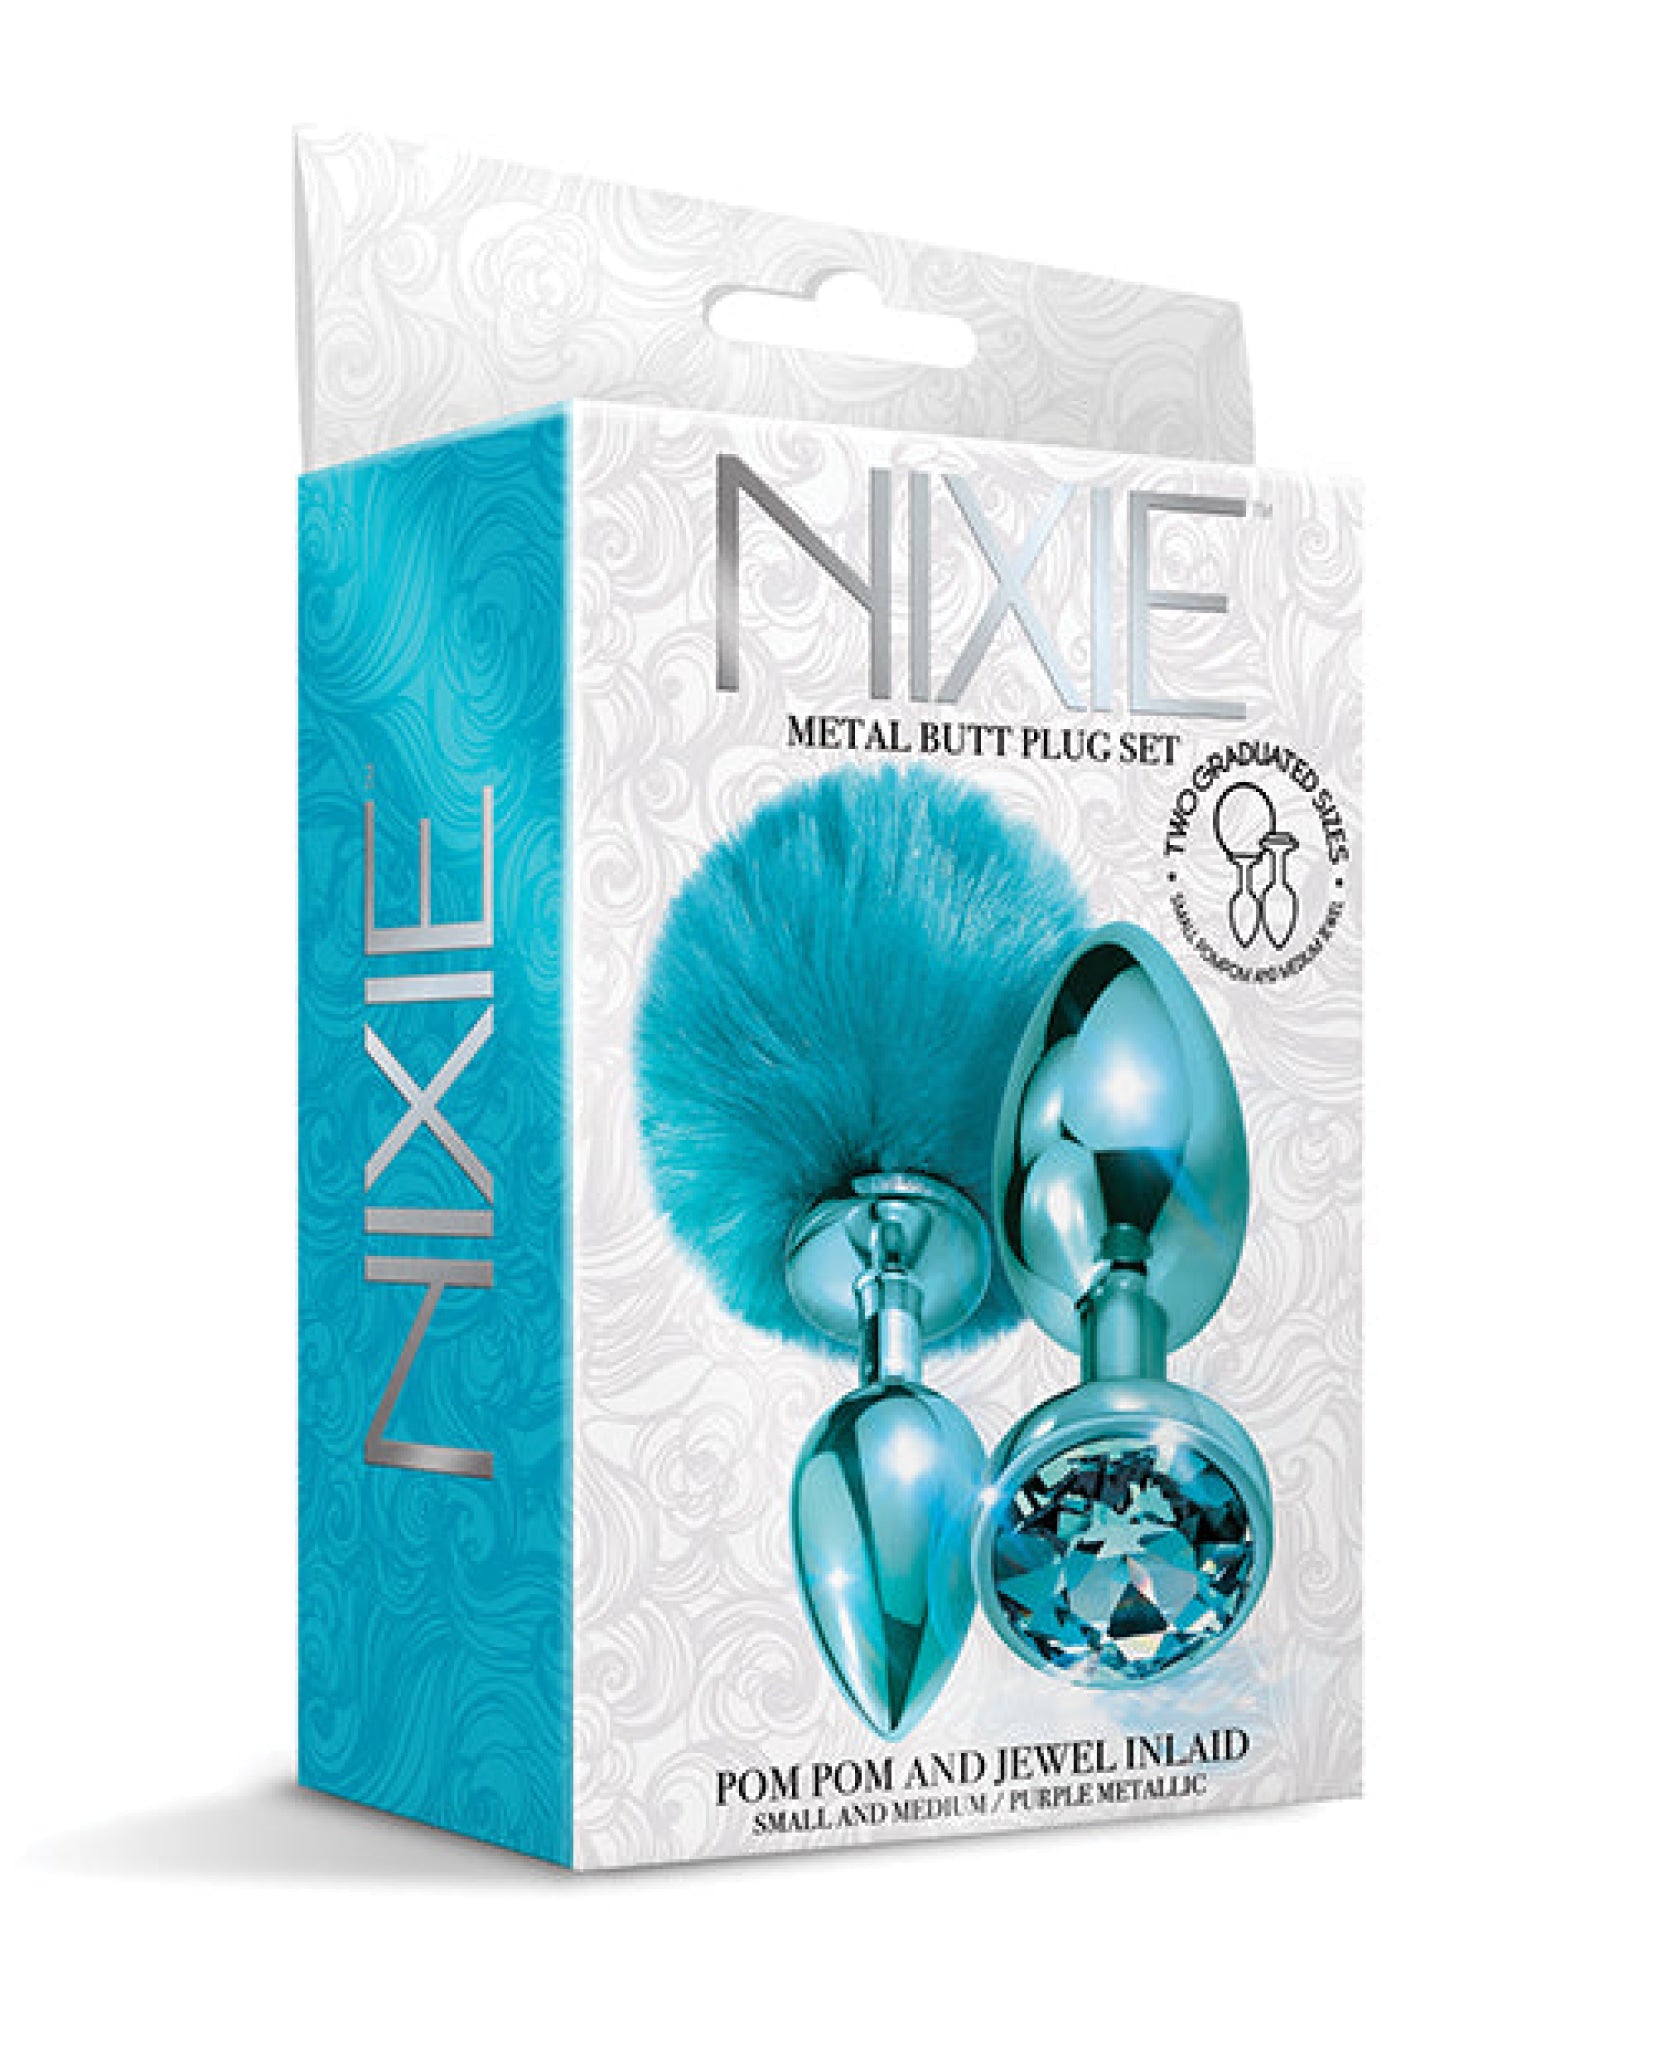 Nixie Metal Butt Plug Set W/jewel Inlaid & Pom Pom Nixie